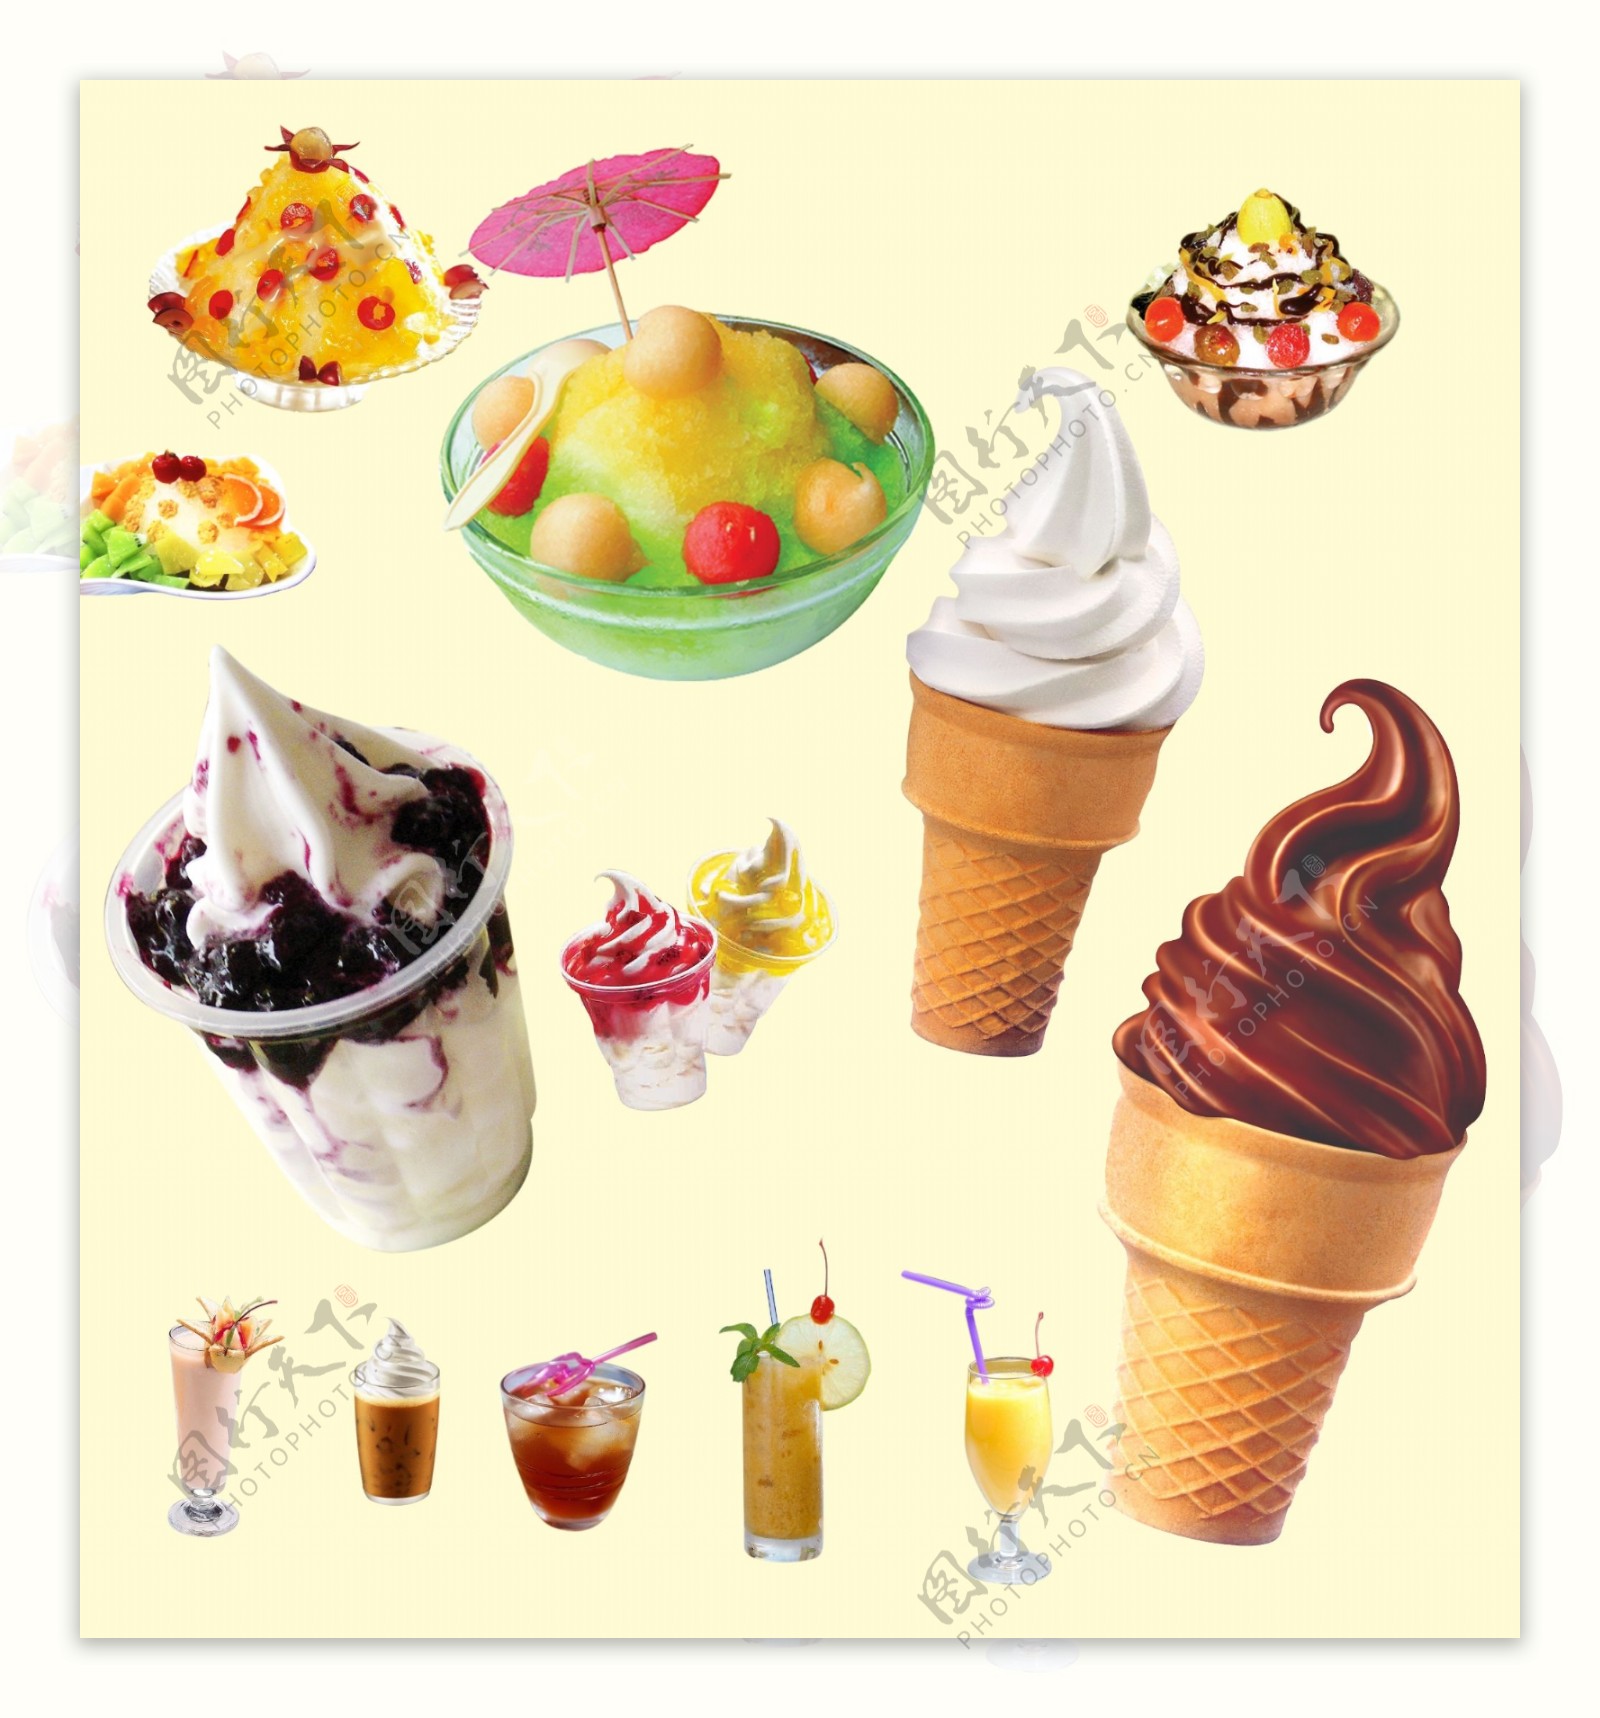 刨冰饮料圣代和圆筒冰淇淋图片